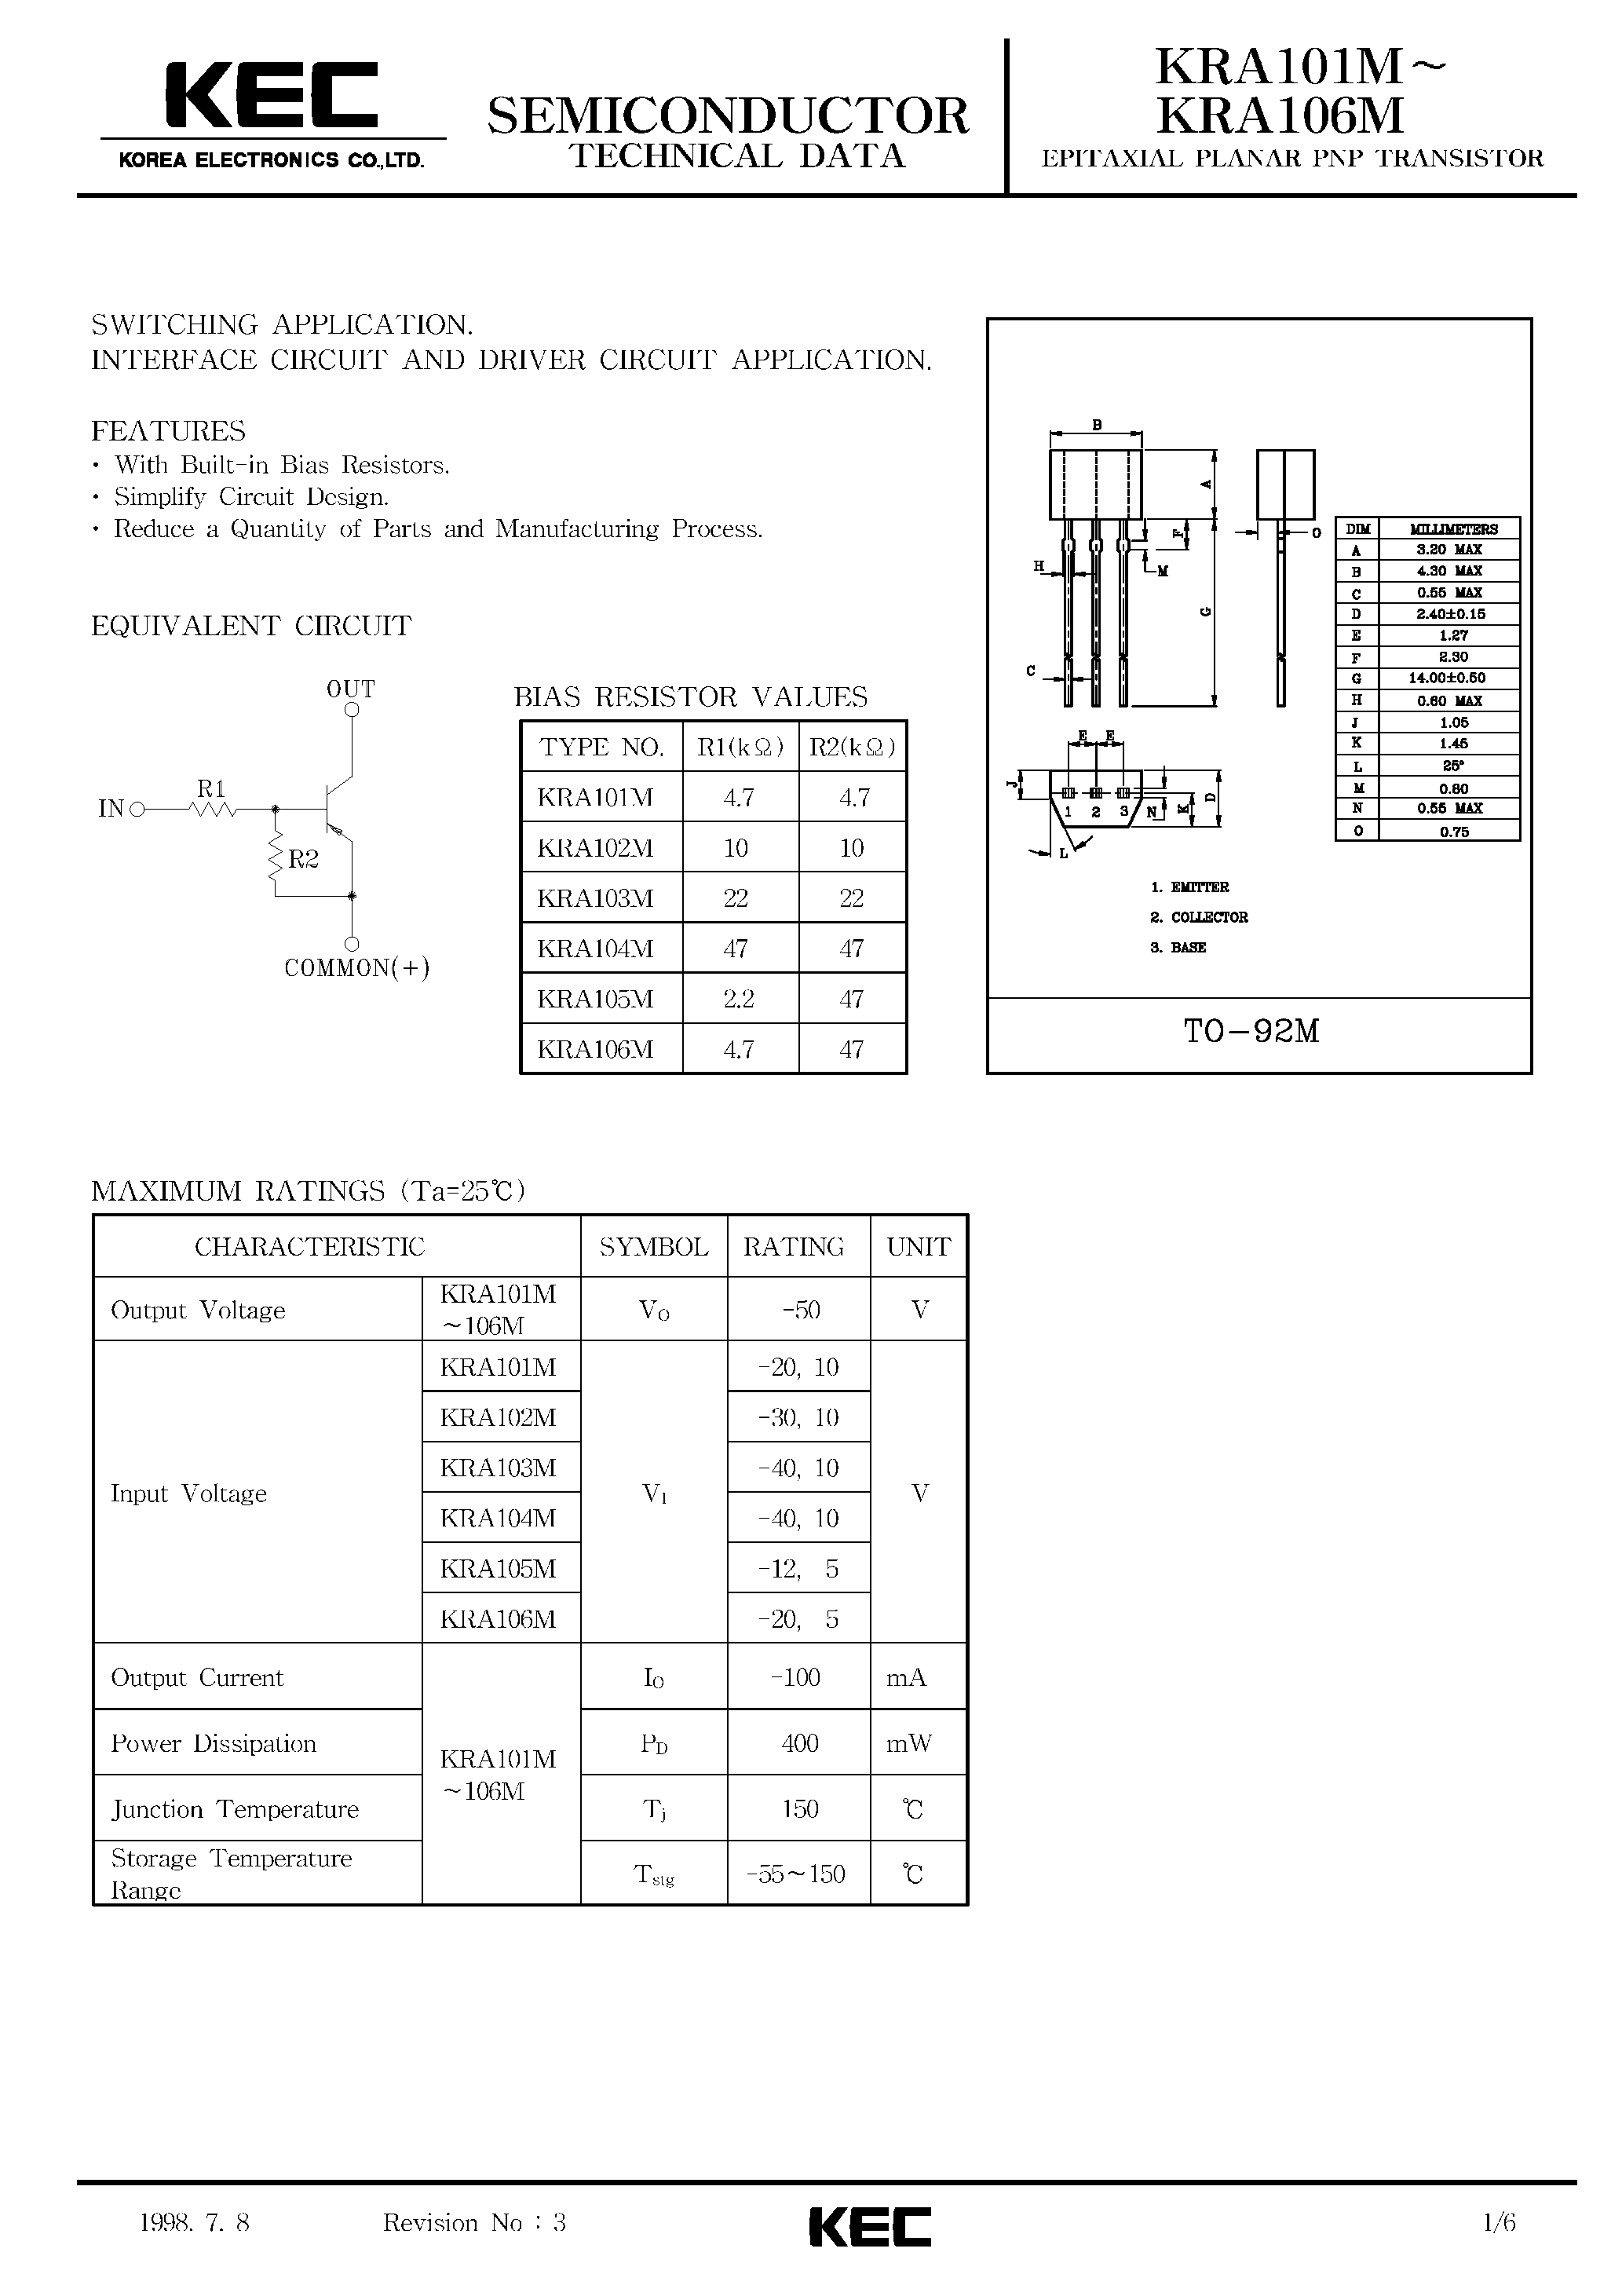 Datasheet KRA101M - (KRA101M - KRA106M) EPITAXIAL PLANAR PNP TRANSISTOR page 1